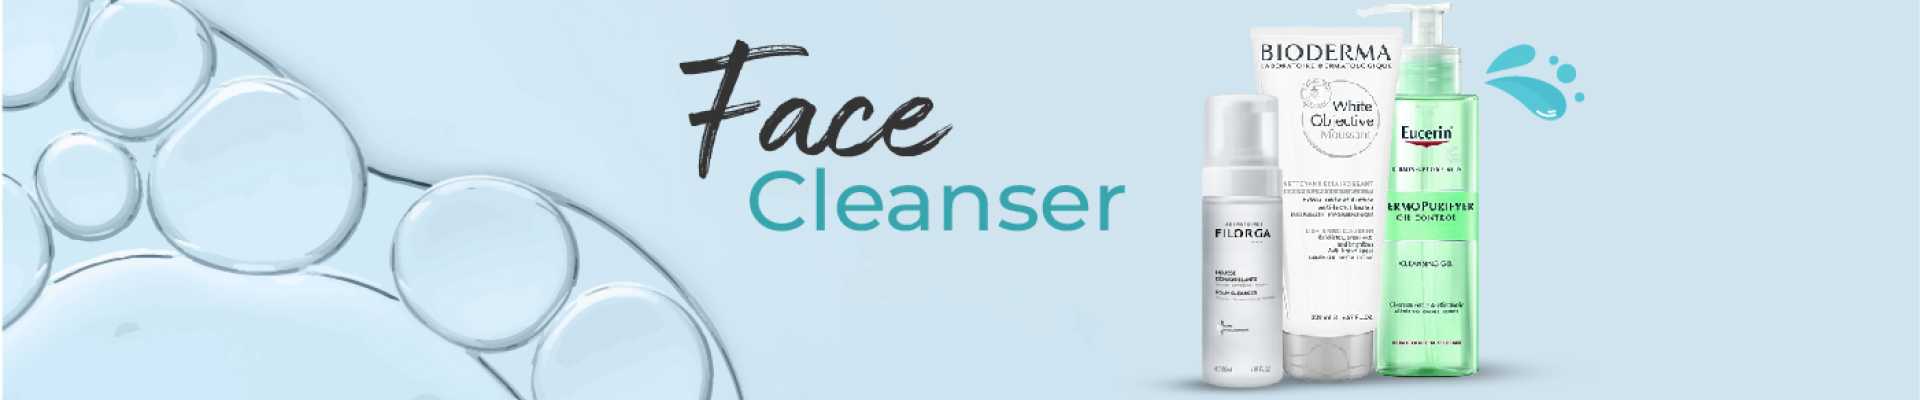 face cleanser slider